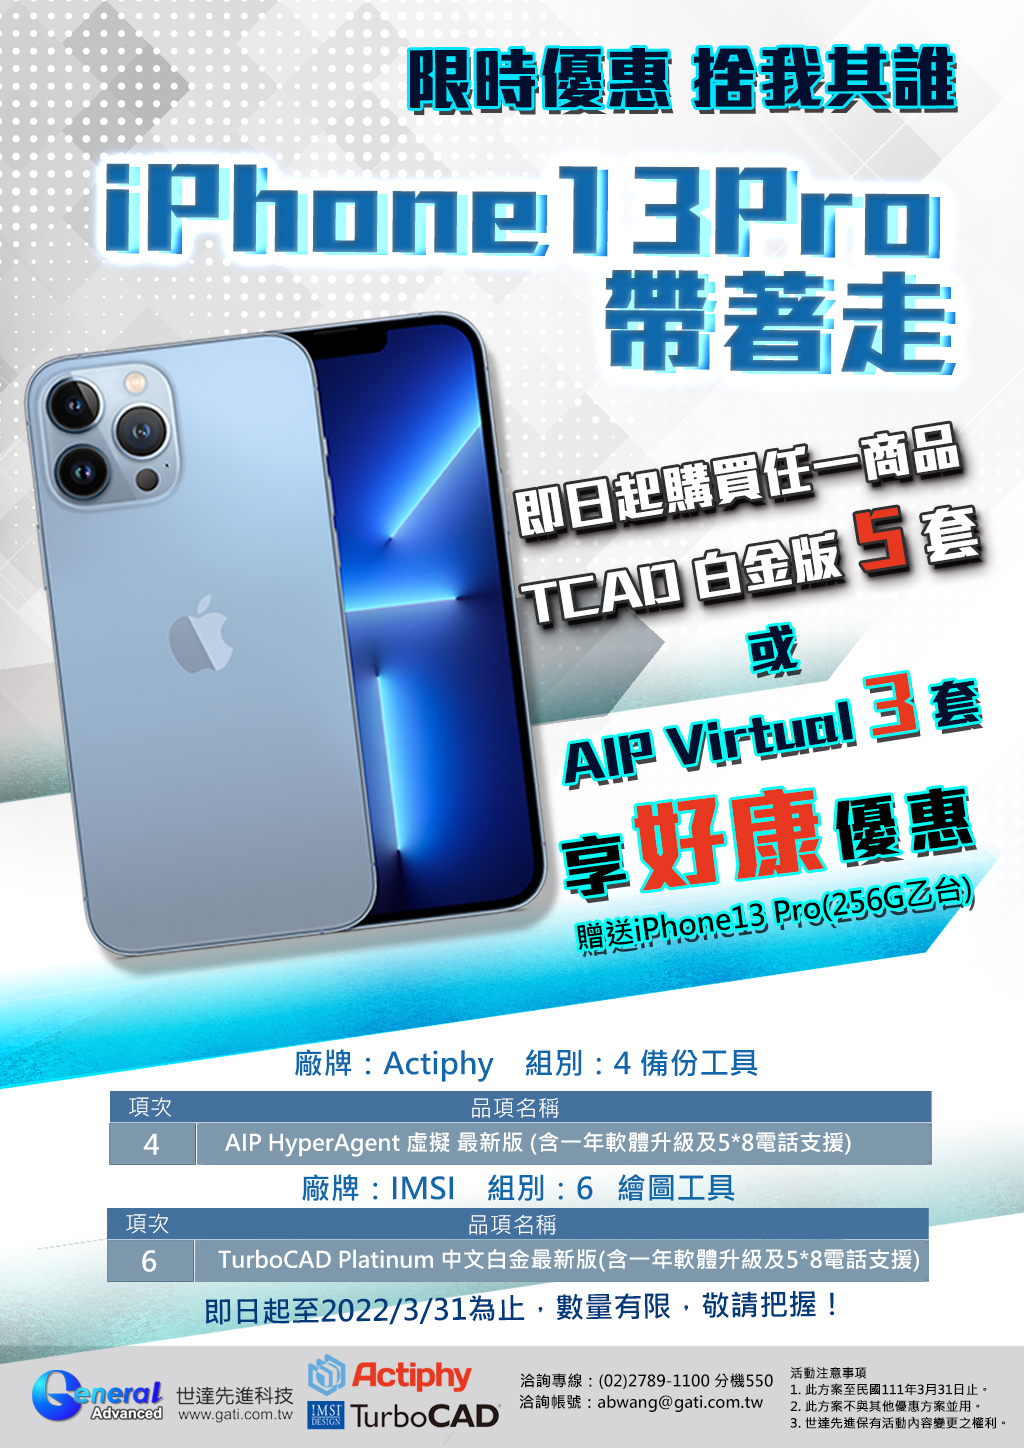 世達先進 限時優惠，購買5套 白金版或AIP Virtual3套 即送iPhone13 Pro